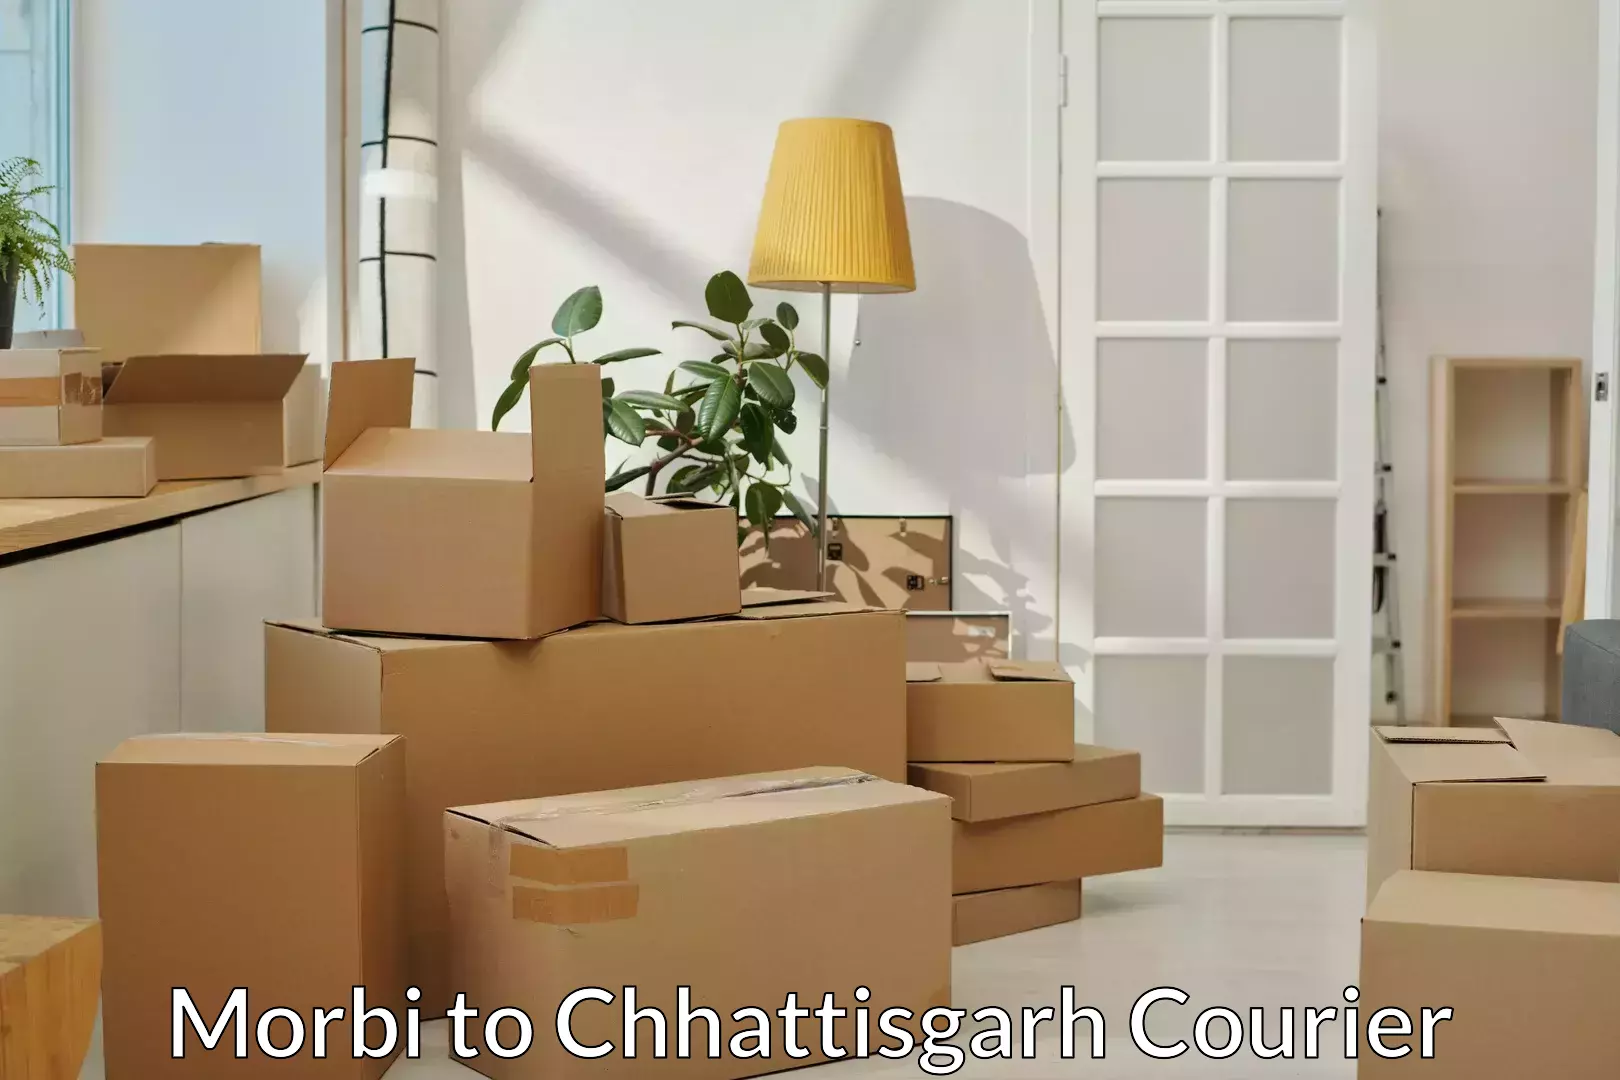 Furniture moving plans Morbi to keshkal